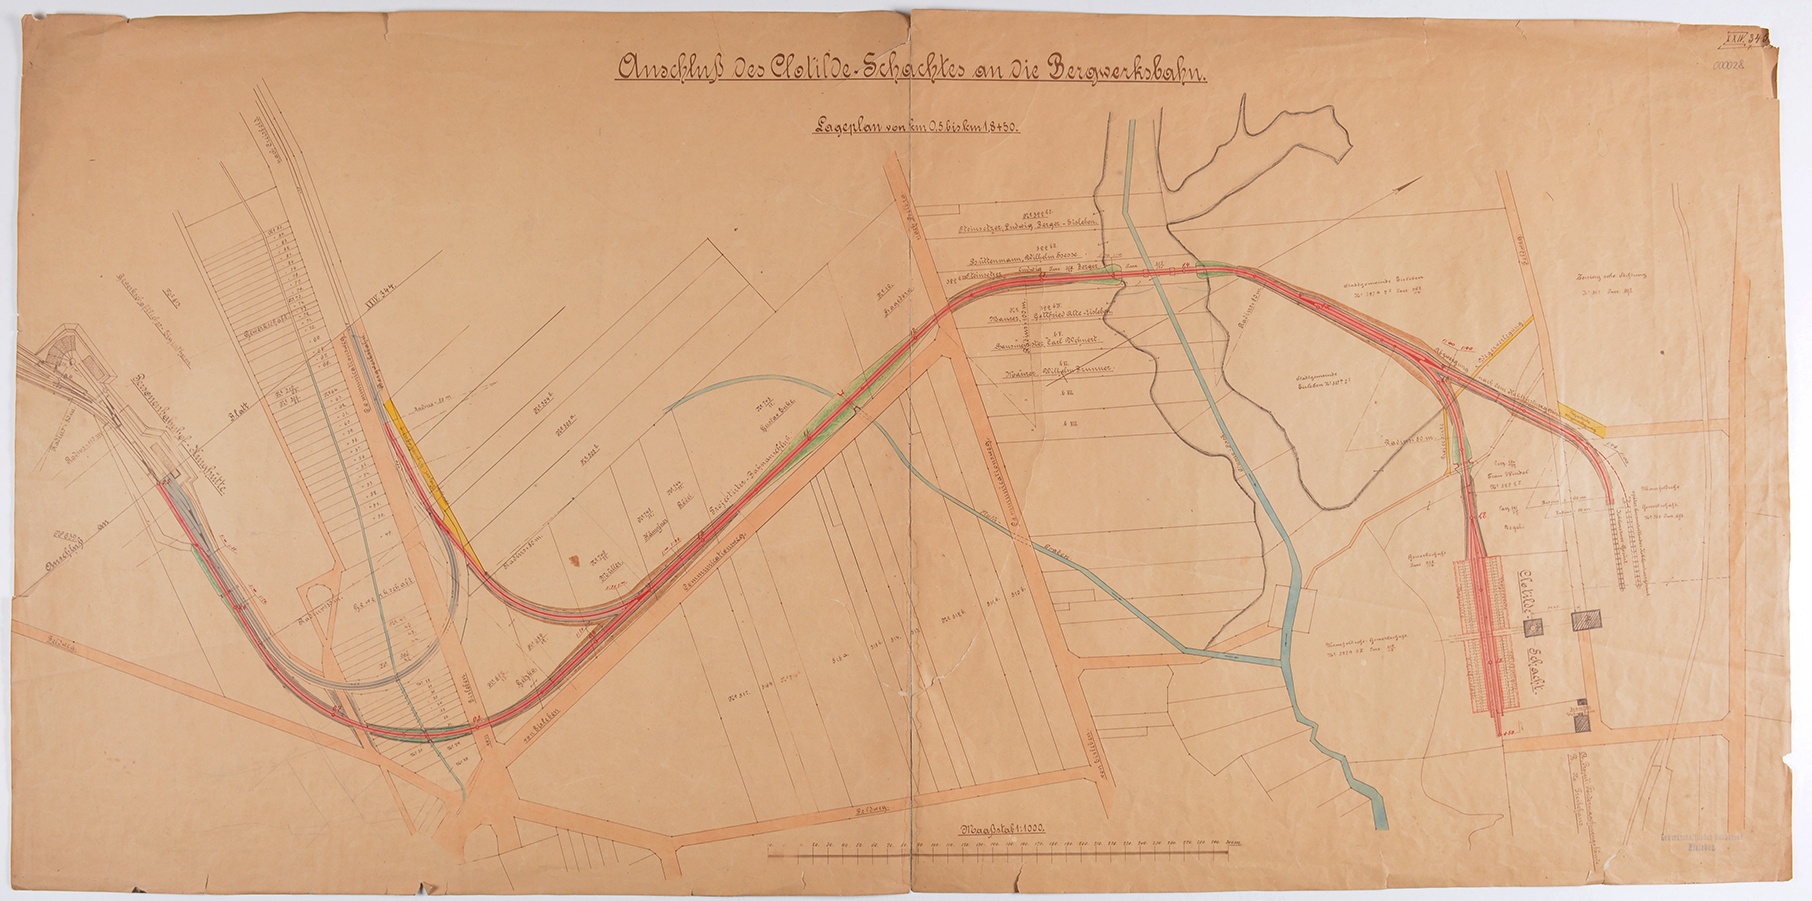 Anschluß des Clotilde-Schachtes an die Bergwerksbahn. Lageplan von km 0,5 bis km 1,8 + 5,0. (Mansfeld-Museum im Humboldt-Schloss CC BY-NC-SA)